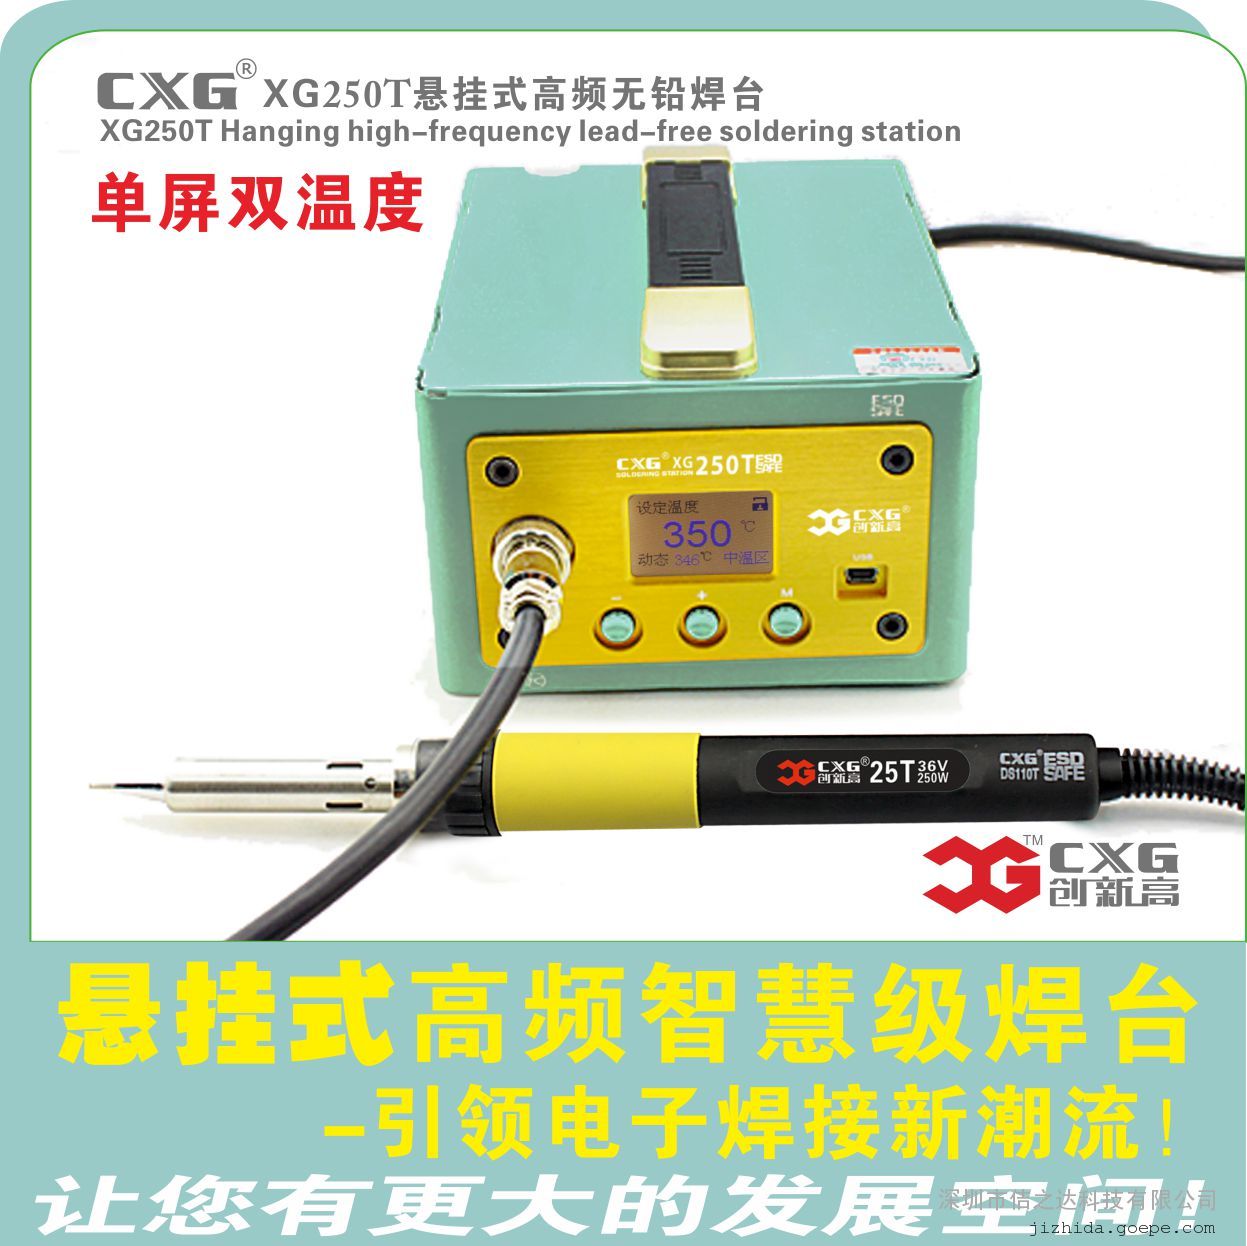 锦州CXG XG250T ESD悬挂高频无铅焊台公司